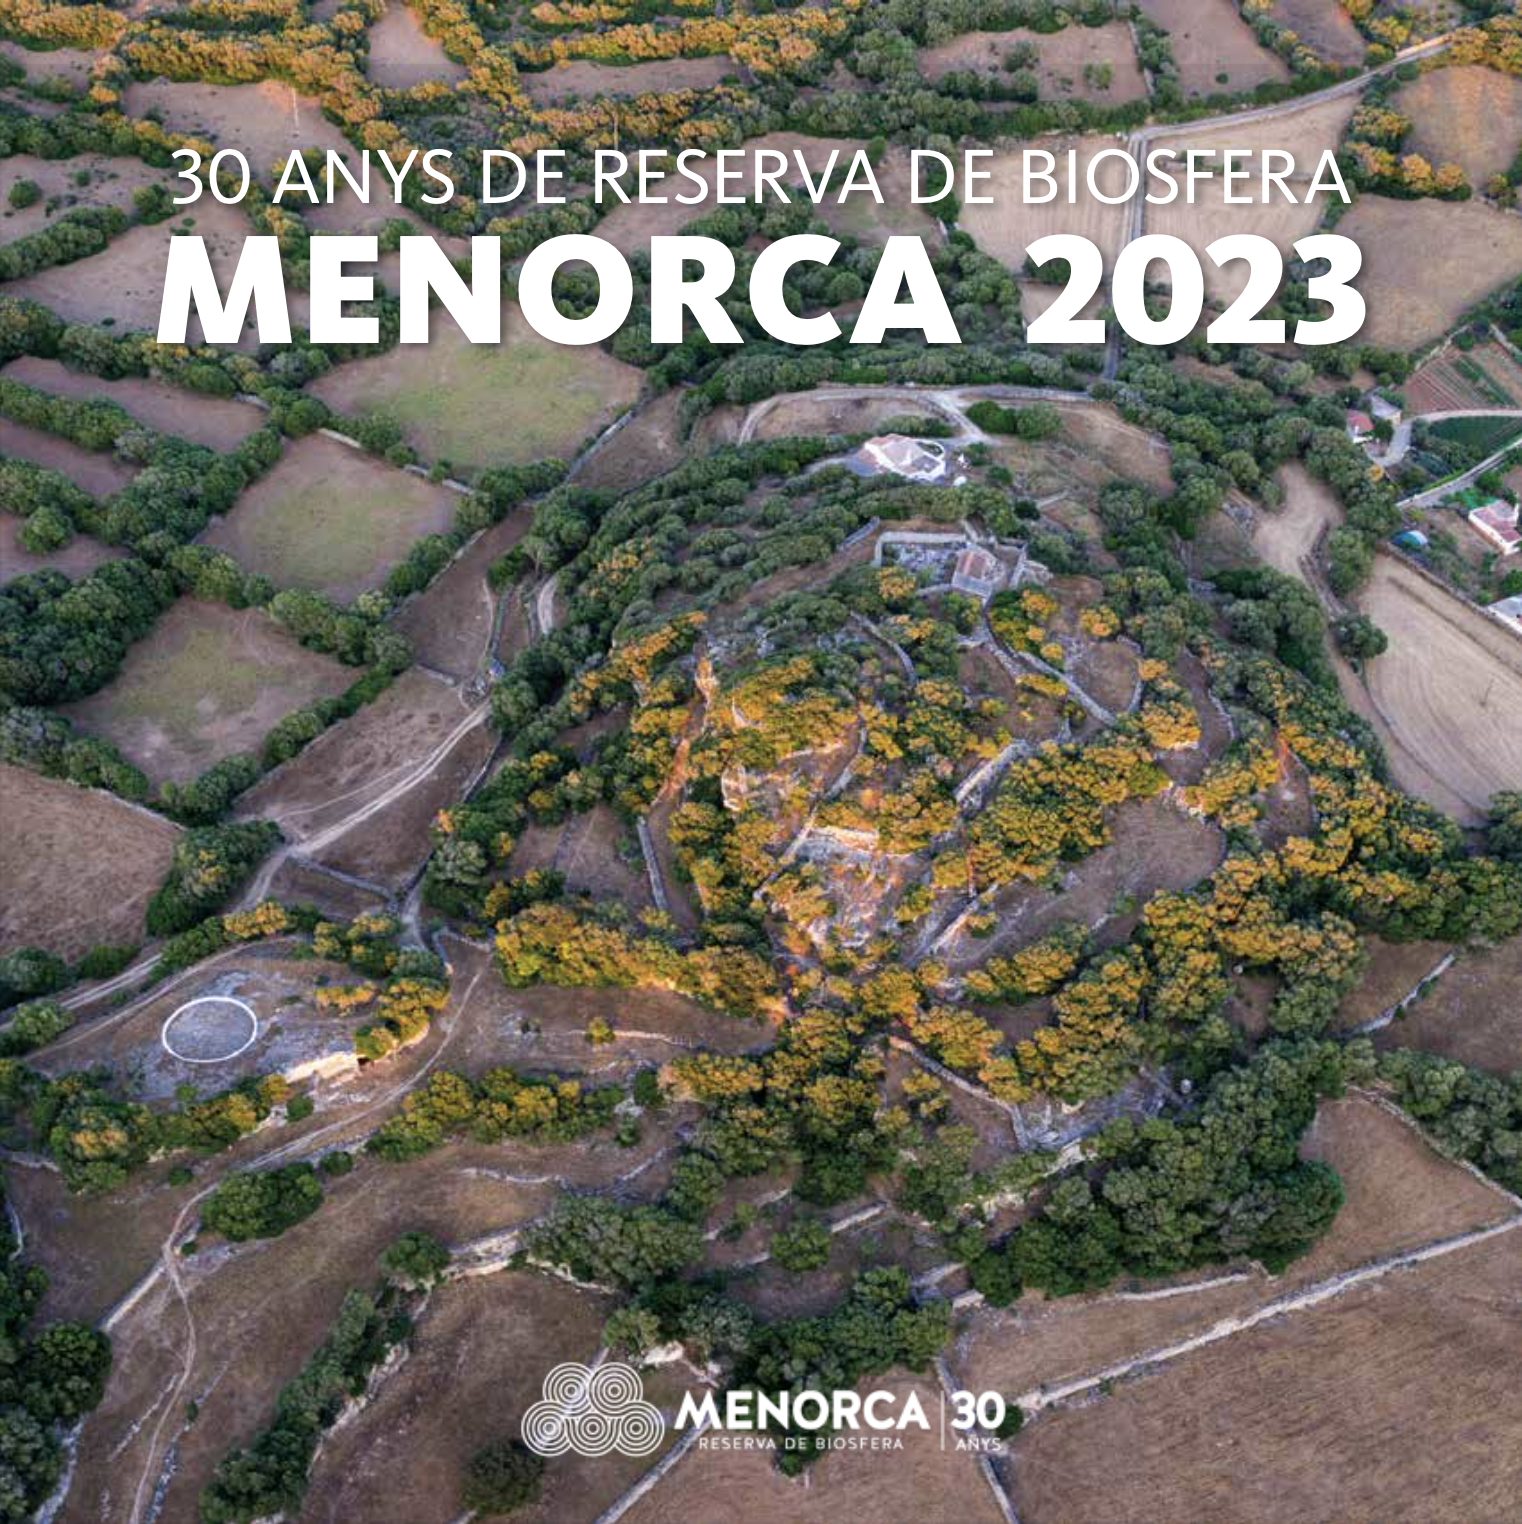 Un any més, el Consell Insular posa a disposició de la ciutadania el nou calendari de paret per a l'any que ve. Per a aquest any 2023, retrà homenatge al 30è aniversari de la declaració de Menorca com a reserva de biosfera per la UNESCO. L'Agència Menorca Reserva de Biosfera ha estat l'encarregada de confeccionar el calendari i ho ha fet il·lustrant els 12 projectes de sostenibilitat més destacats que impulsa actualment l'òrgan gestor de la reserva. Així s'explica a la primera pàgina del calendari: "La UNESCO va declarar l'illa reserva de biosfera el 1993 en reconeixement als valors naturals, històrics i culturals, així com pel compromís dels seus habitants amb la sostenibilitat, compatibilitzant el desenvolupament econòmic i social amb la preservació del patrimoni. Aquest any ja es compleixen trenta anys d'aquesta declaració, i des de llavors es promouen polítiques encaminades a aconseguir l'equilibri entre desenvolupament social, econòmic i mediambiental". L'impuls de projectes d'educació ambiental, la protecció del cel nocturn, l'estratègia de biodiversitat, el Contracte Agrari de la Reserva de Biosfera, la gestió de platges i la geodiversitat, l'Estratègia Alimentària, la marca Menorca Reserva de Biosfera o l'Estratègia Menorca 2030 són alguns dels projectes reflectits en aquest calendari, que juntament amb cadascuna de les imatges escollides compta amb un breu text explicatiu del treball que es realitza en la matèria. La portada, una fotografia d'un lloc menorquí en vista aèria realitzada per Juanjo Pons, cerca il·lustrar també un altre dels camps d'acció de la reserva de biosfera, com és la conservació i posada en valor del patrimoni paisatgístic de l'illa. Les fotografies de l'interior han estat realitzades per David Arquimbau, Beatriz Burgos, David Cardona Coll, Daijiro, Guillermo Gallego Sánchez, Joan Mercadal, Sílvia Mus, Juanjo Pons, Fèlix de Pablo i Carlos Silvestre Tejero. Aquest calendari 2023 del Consell Insular és la primera de tot un seguit d'activitats d'homenatge que s'organitzaran al llarg de l'any amb motiu del 30è aniversari de Menorca Reserva de Biosfera. El Consell Insular ja ha posat a disposició els calendaris de forma gratuïta a les dues seus insulars a Maó i Ciutadella, així com als ajuntaments de cada municipi de l'illa.